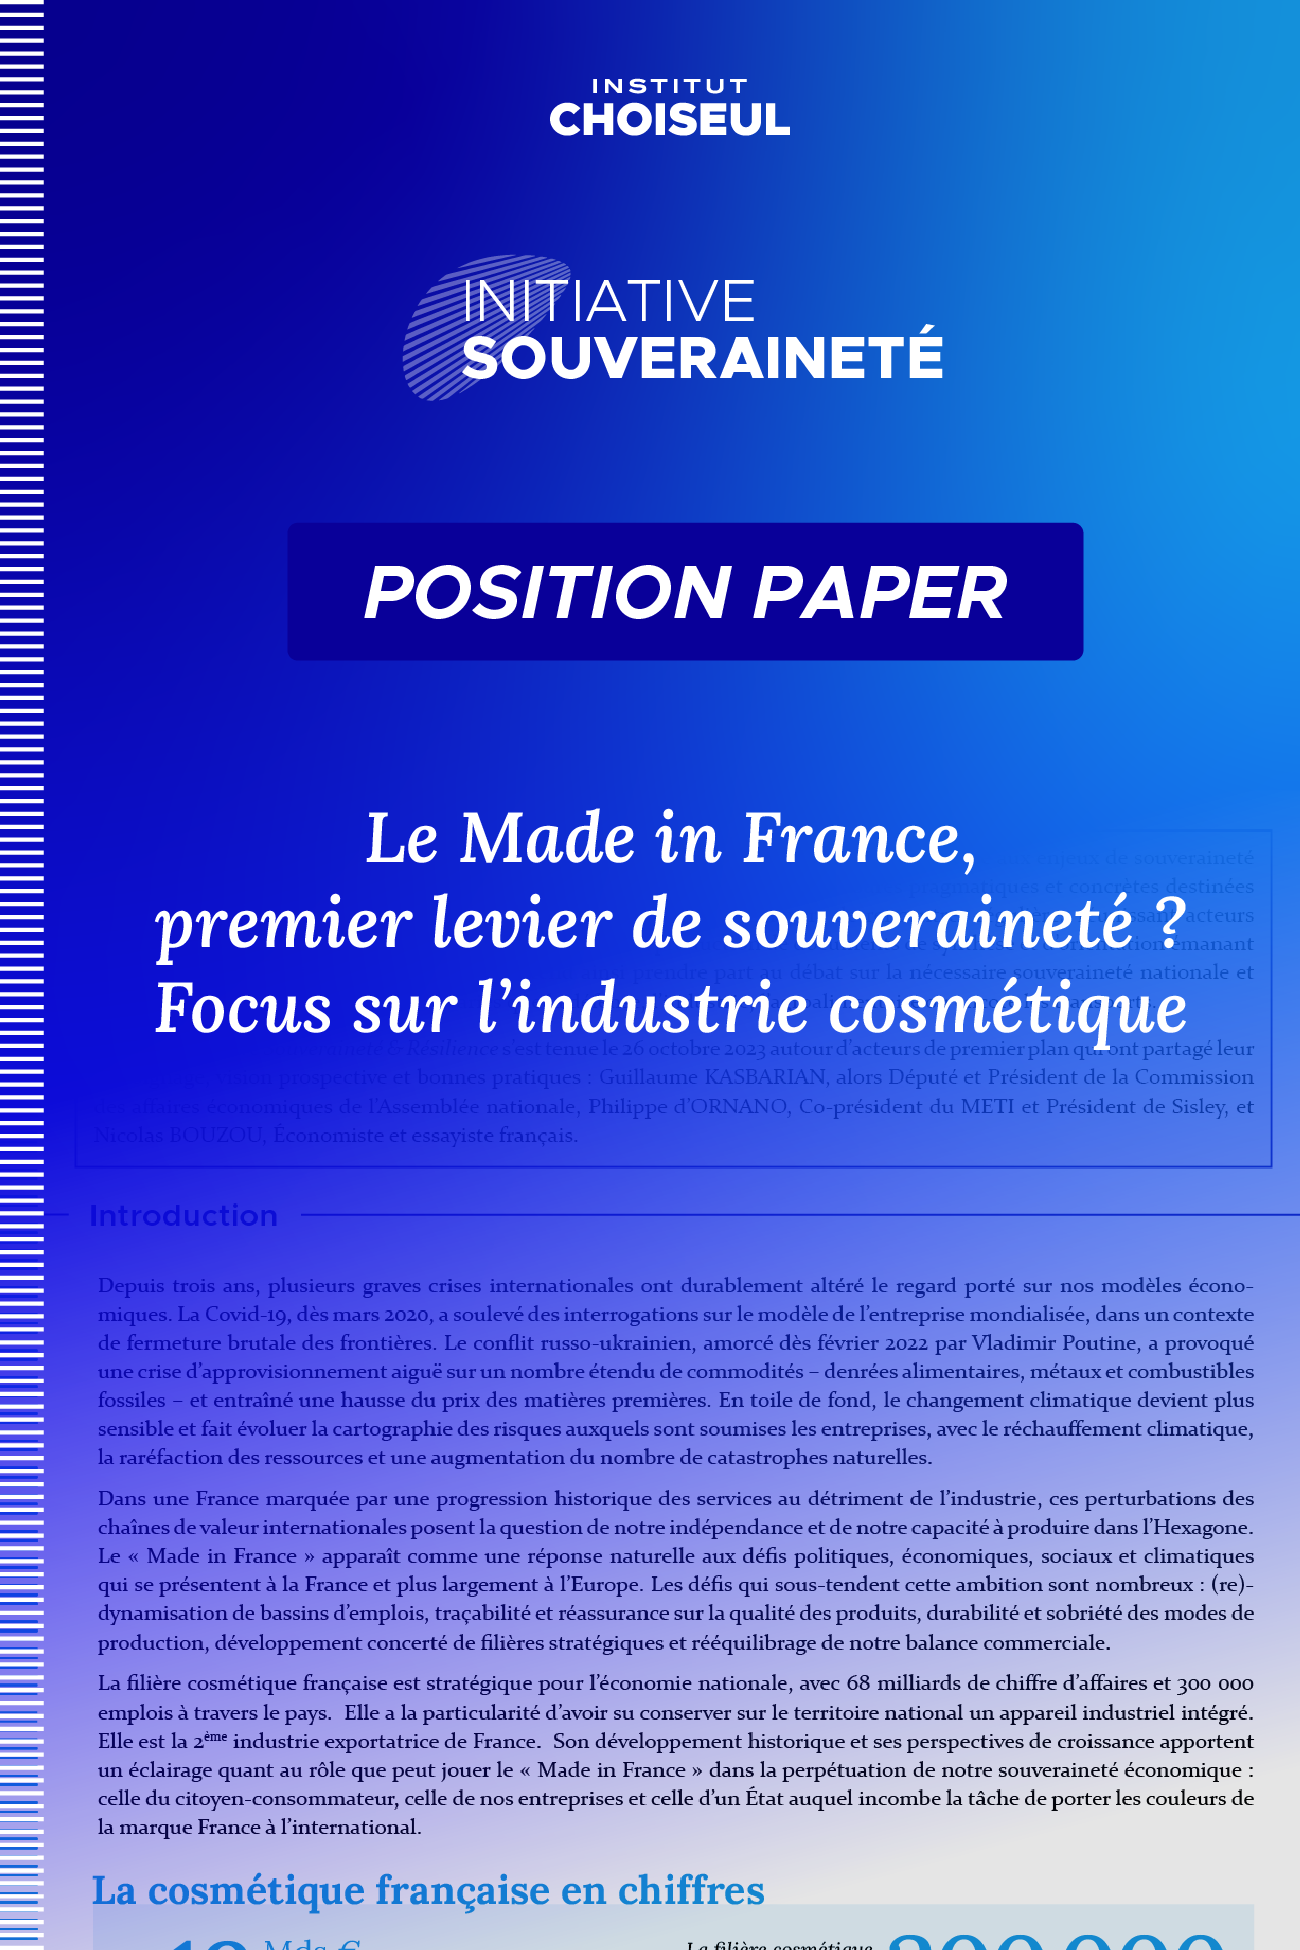 Le Made in France, premier levier de souveraineté ? Focus sur l’industrie cosmétique